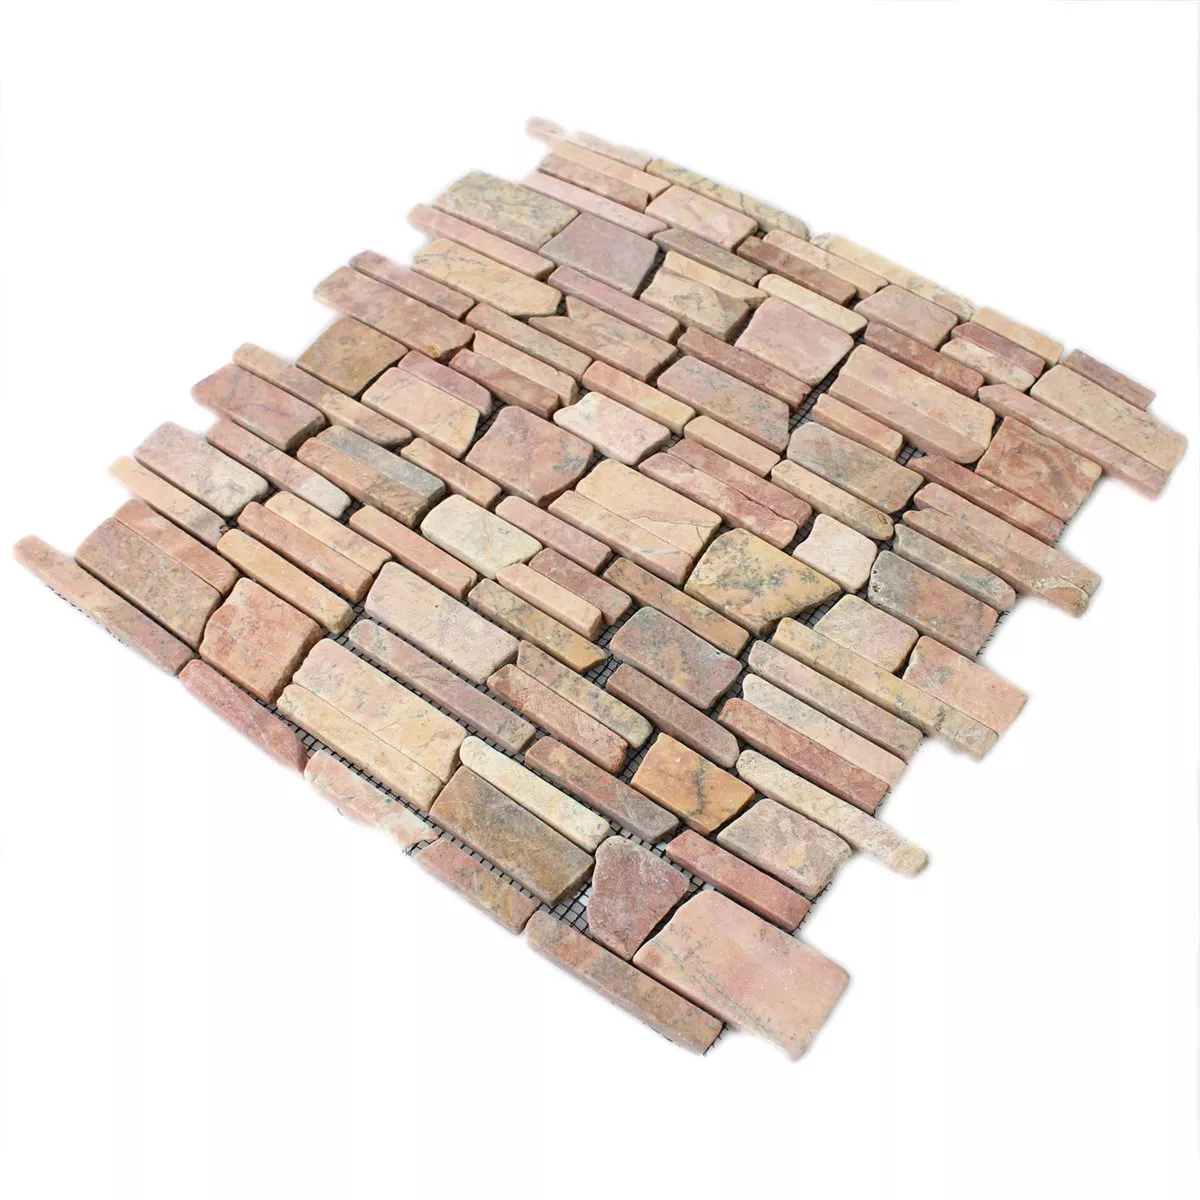 Padrão de Azulejo Mosaico Mármore Pedra Natural Brick Rosso Verona